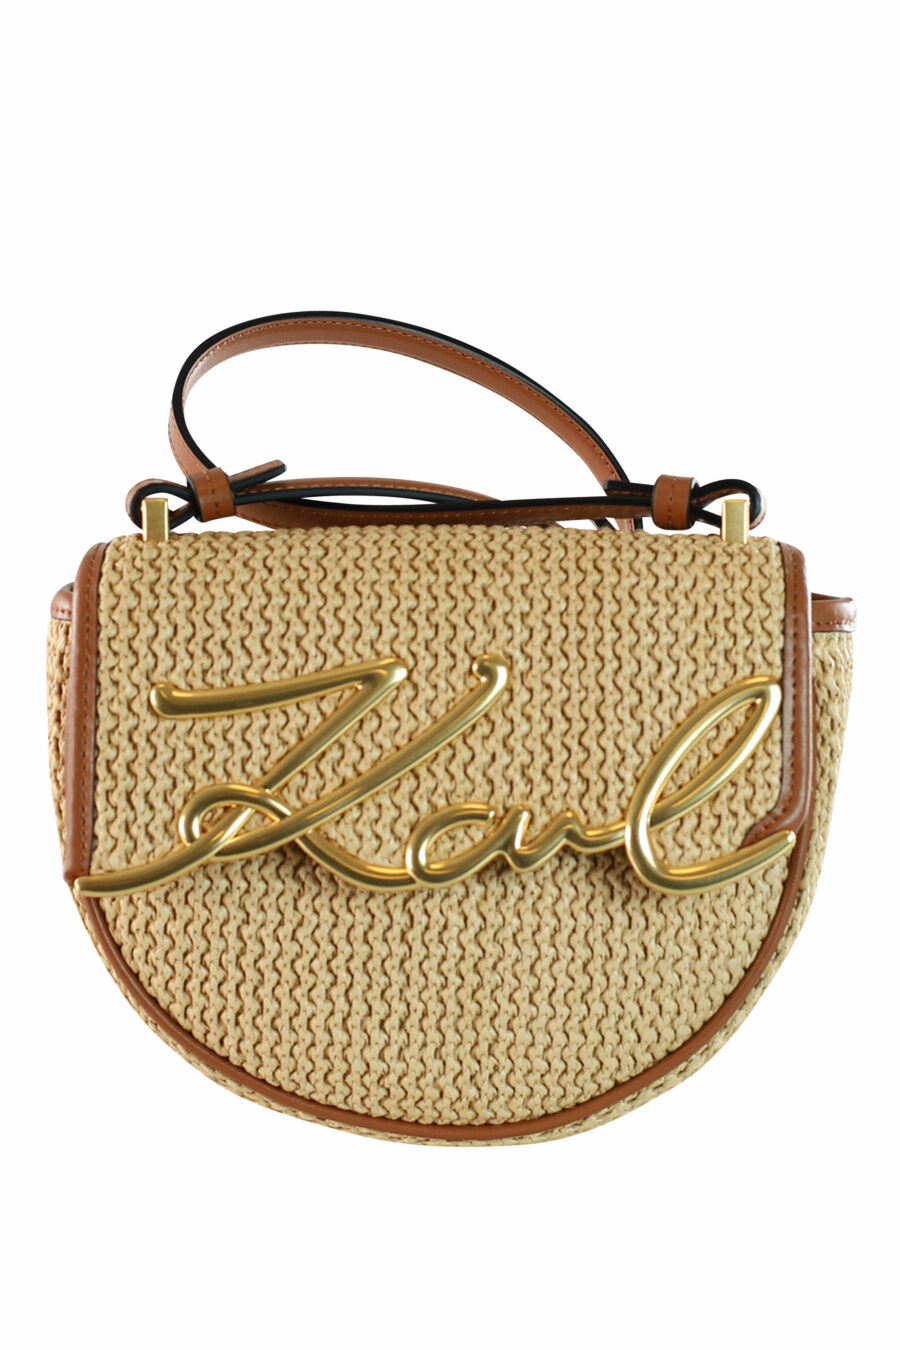 Light brown shoulder bag with gold lettering logo - 8720744234548